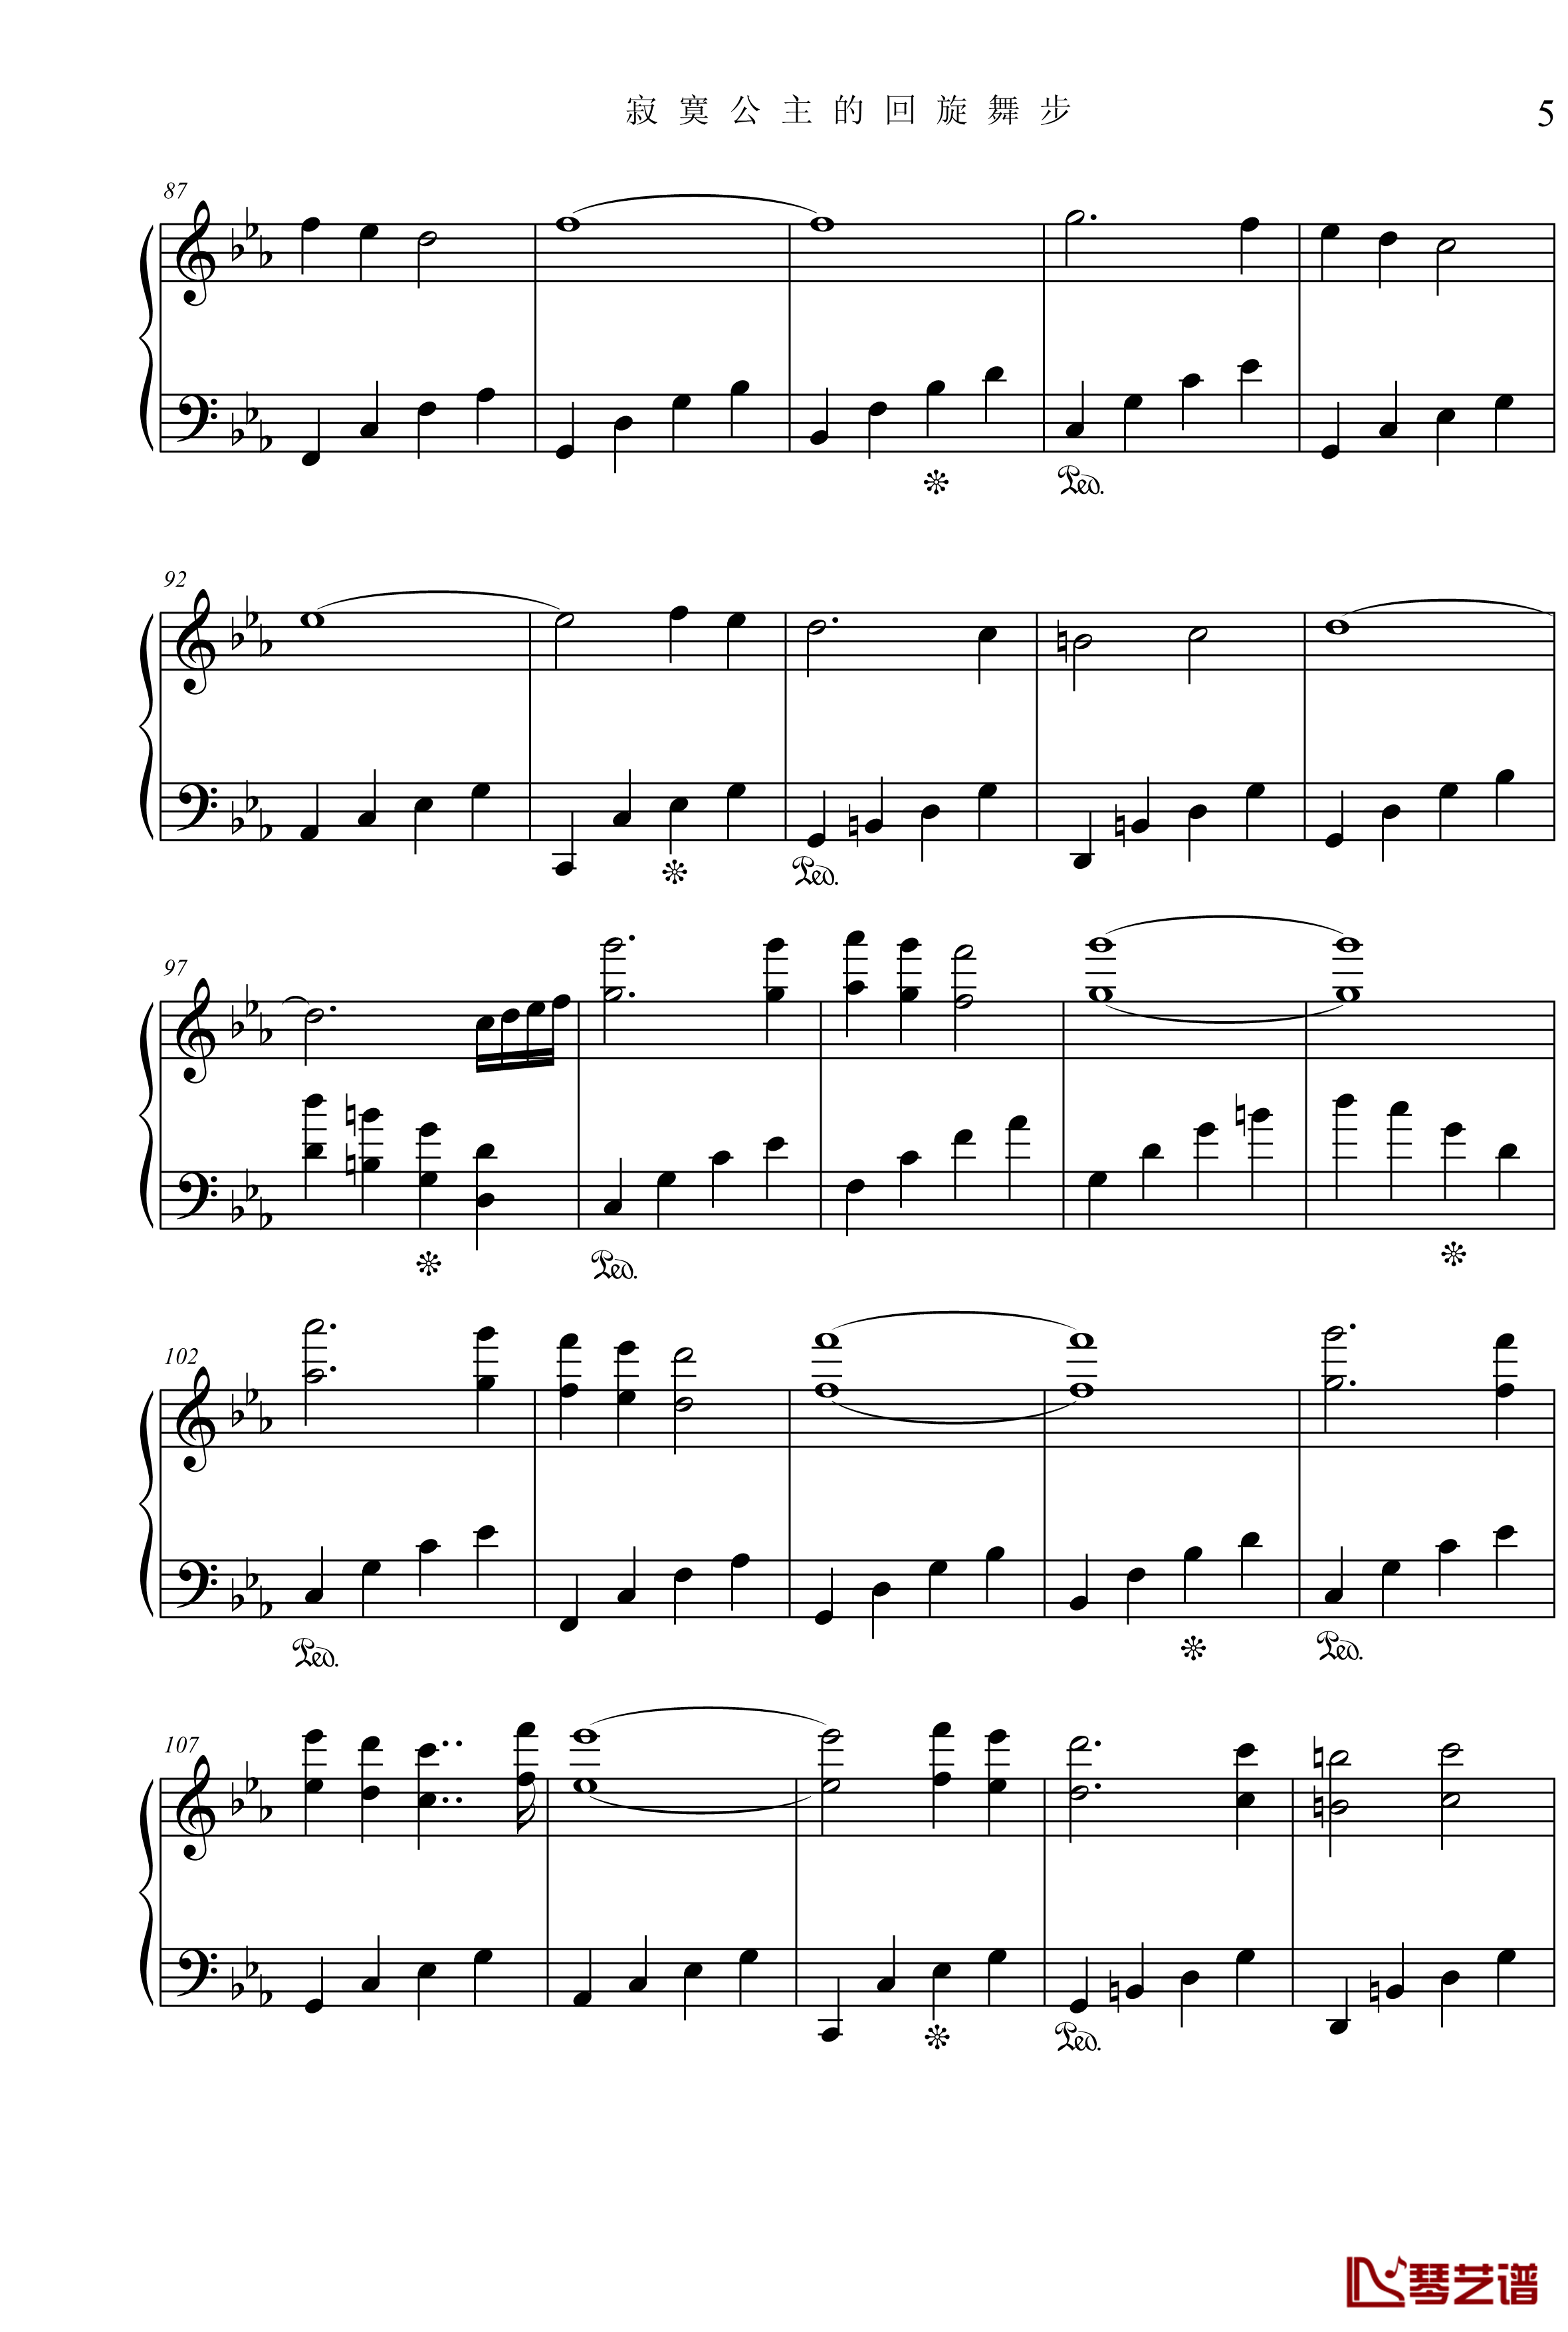 公主奏鸣曲第三乐章钢琴谱-舞步-项海波5